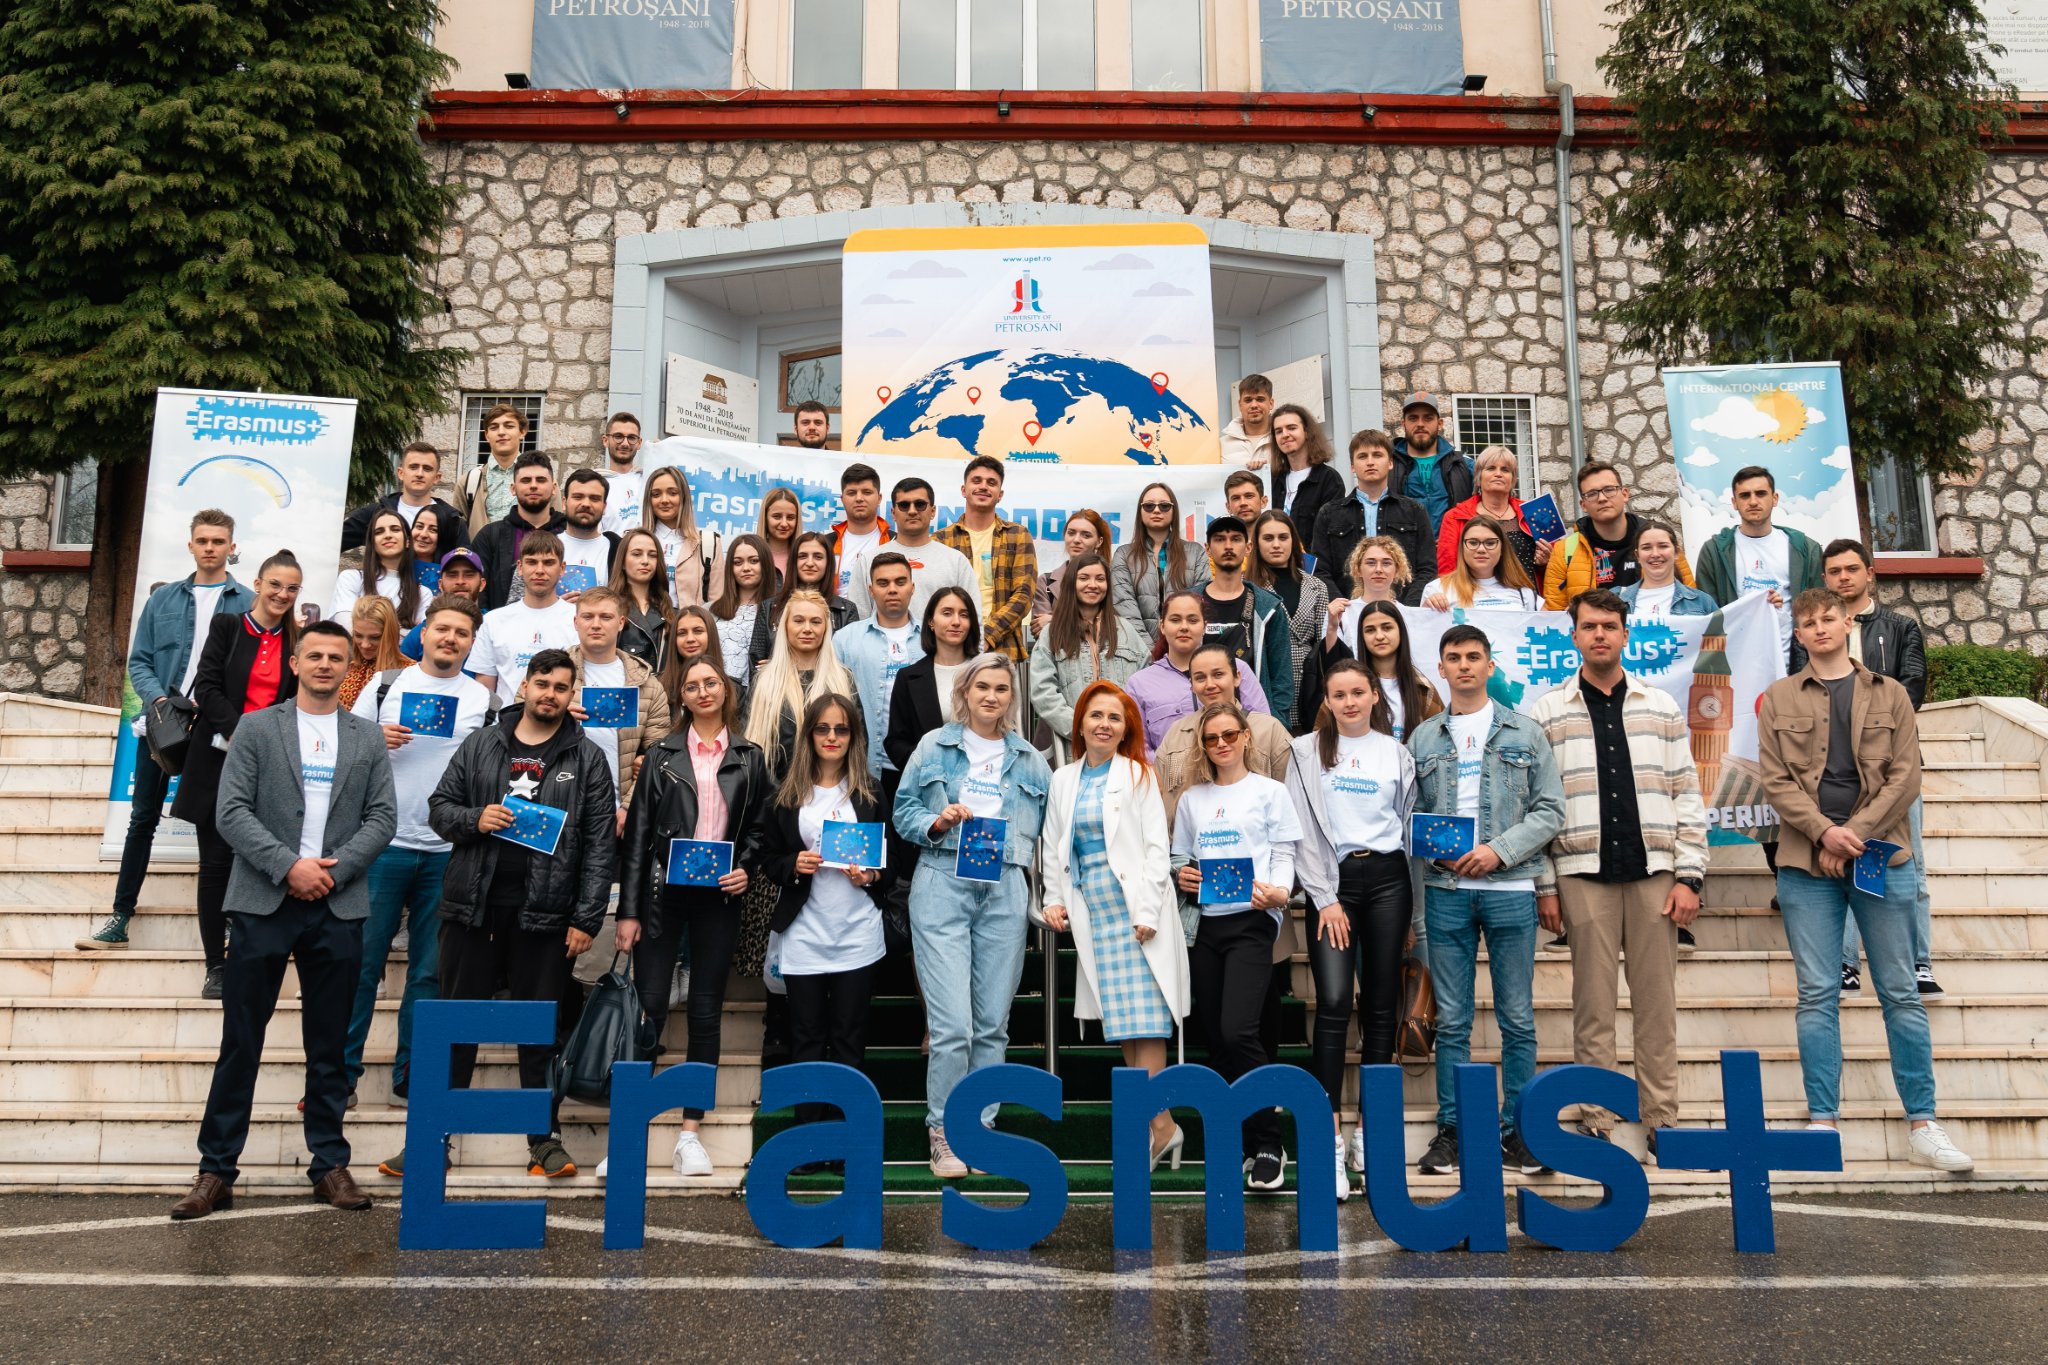 Dublă sărbătoare la Universitatea din Petroșani: „Ziua Europei” și aniversarea Erasmus+, programul care deschide minți, de 25 de ani încoace